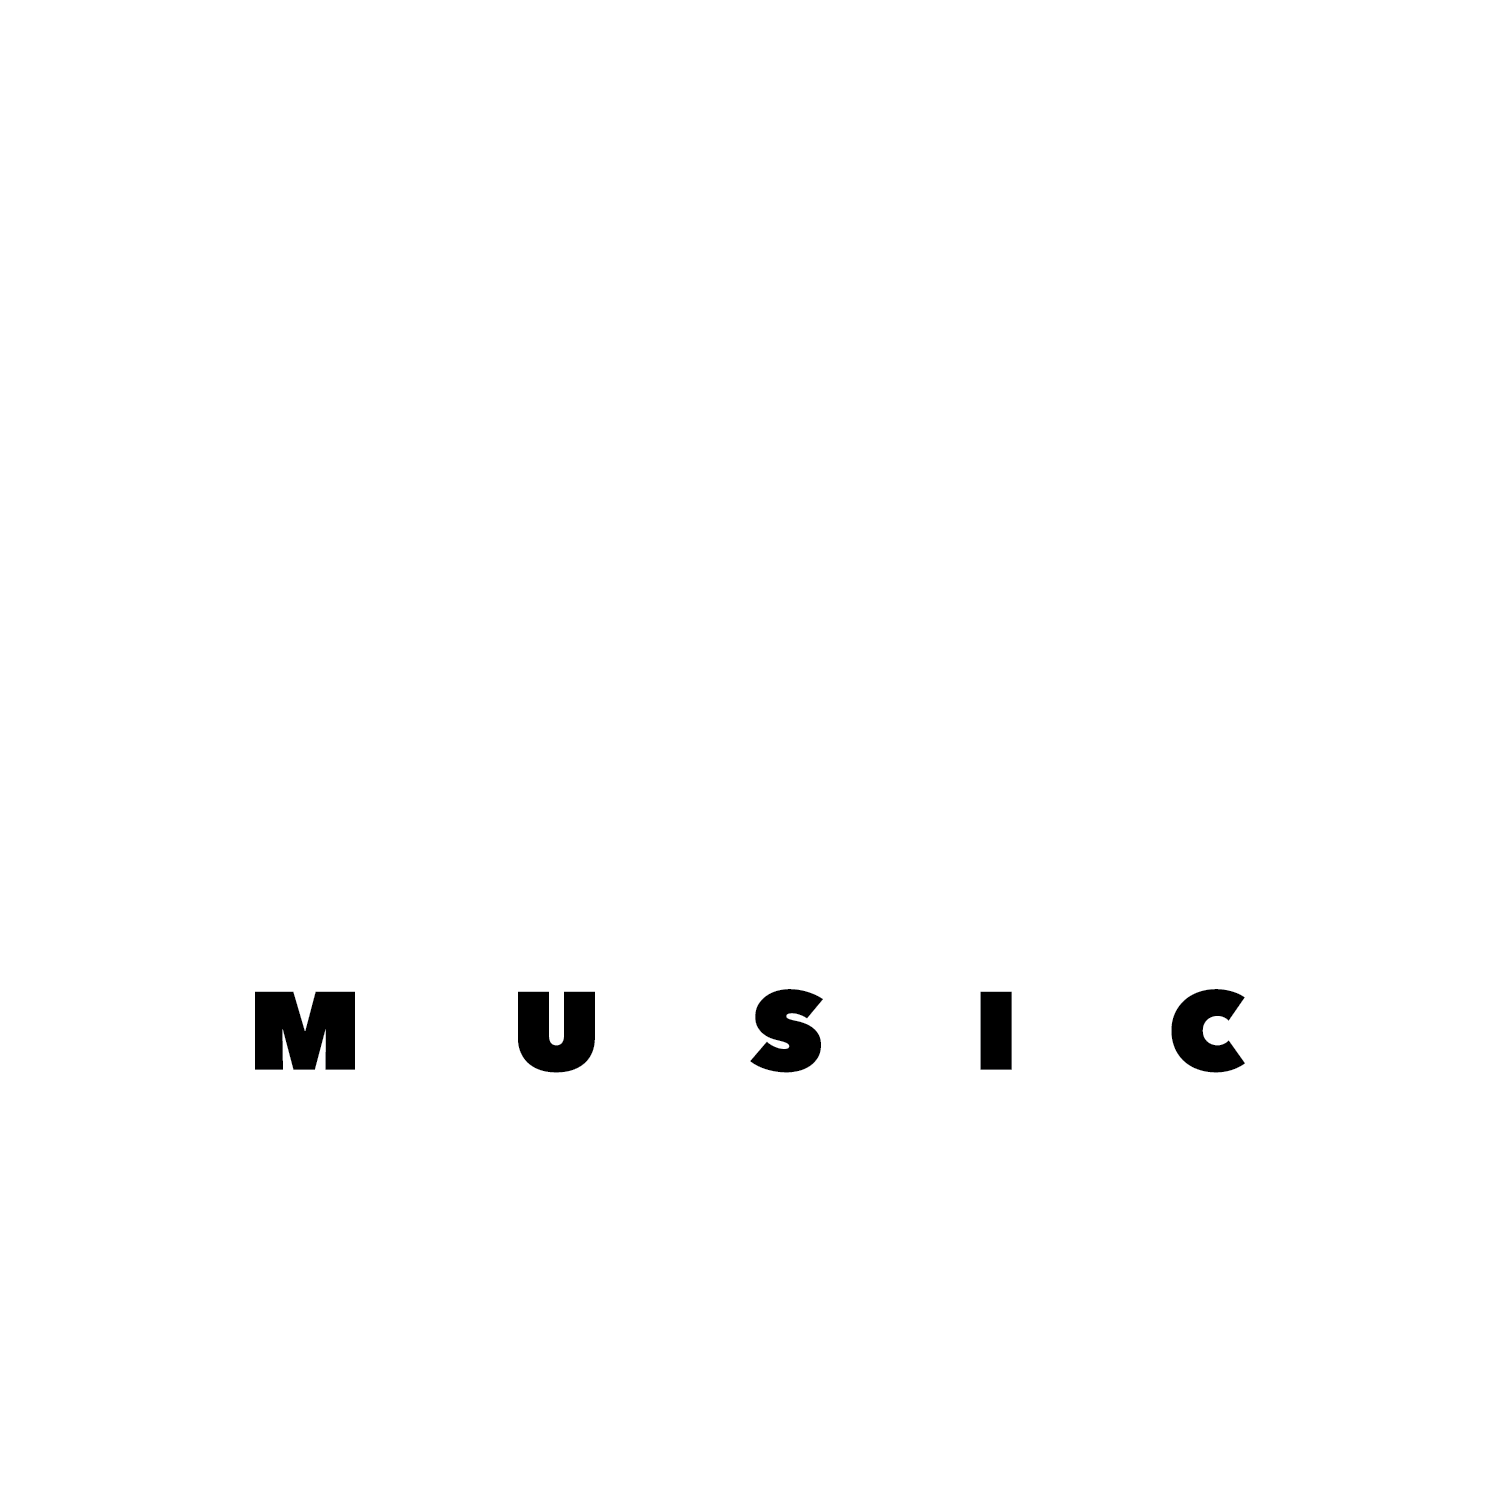 MDC Music